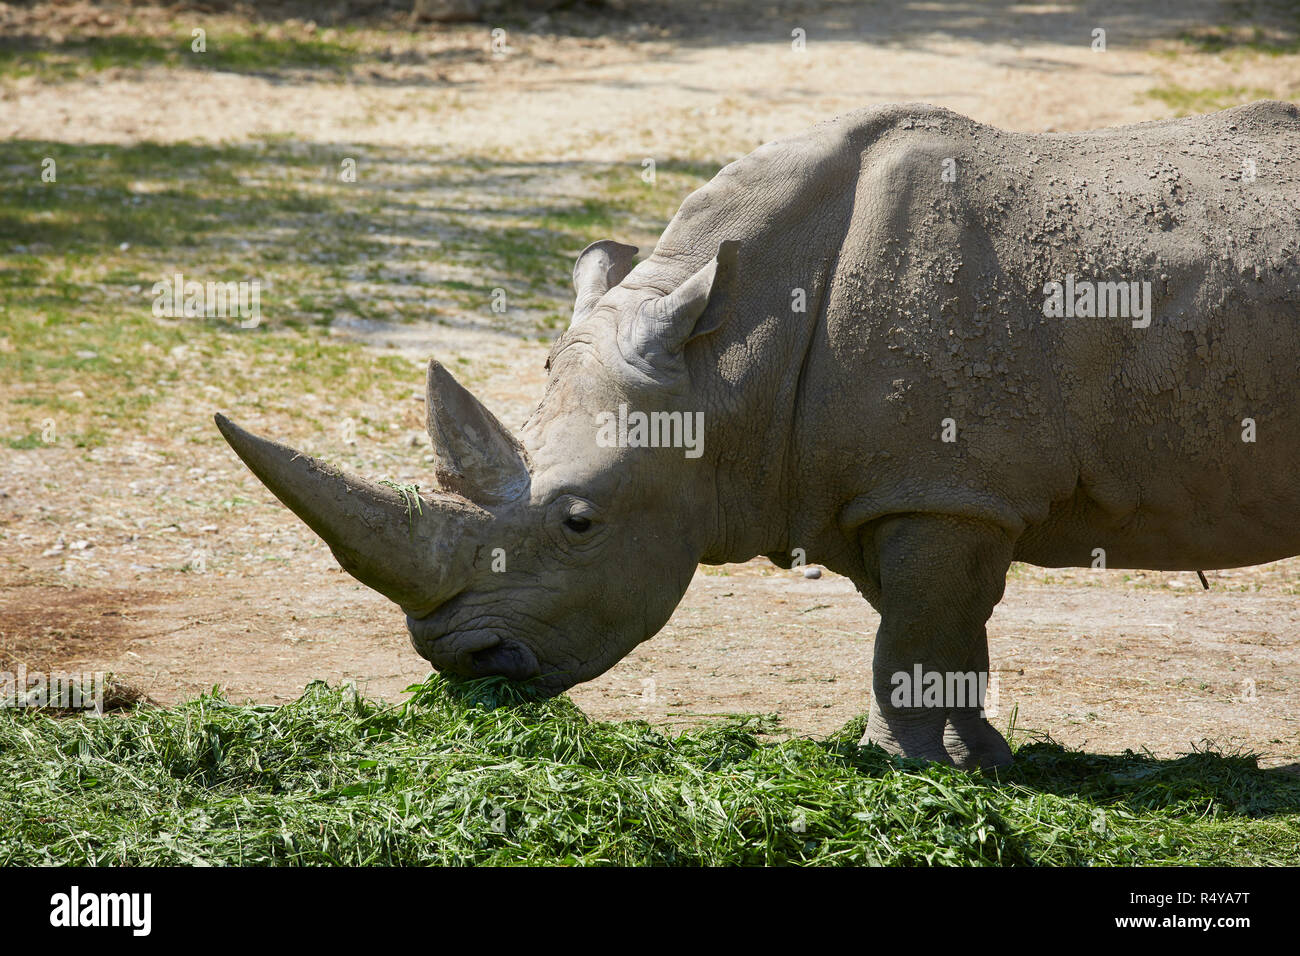 Feeding rhino in a zoo, Italy Stock Photo